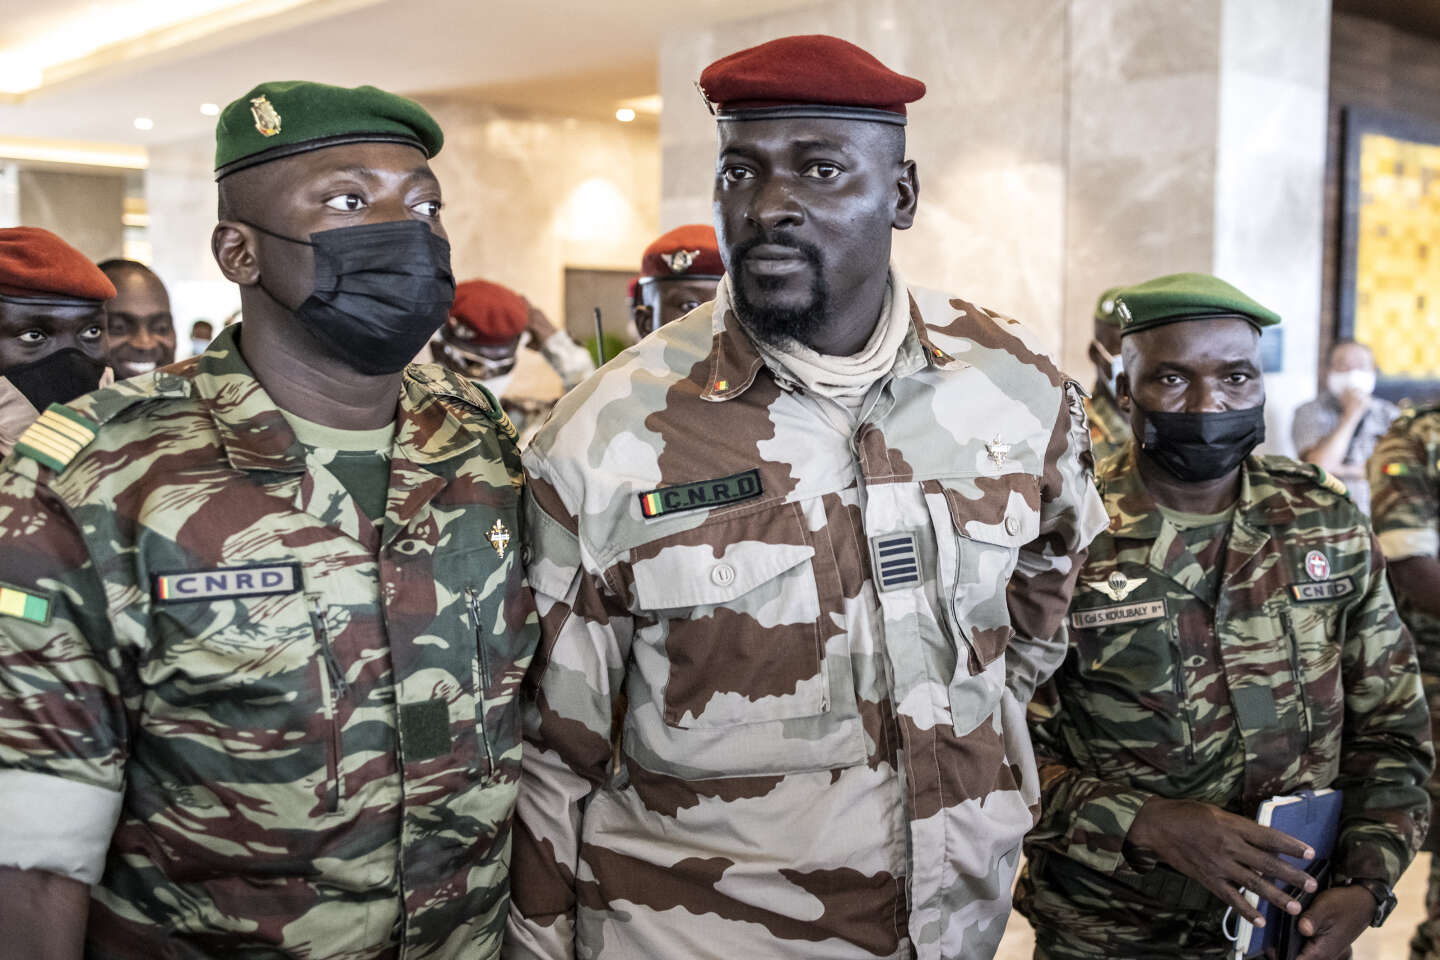 Le chef de la junte guinéenne au Mali à la veille d’un important sommet de l’Afrique de l’Ouest